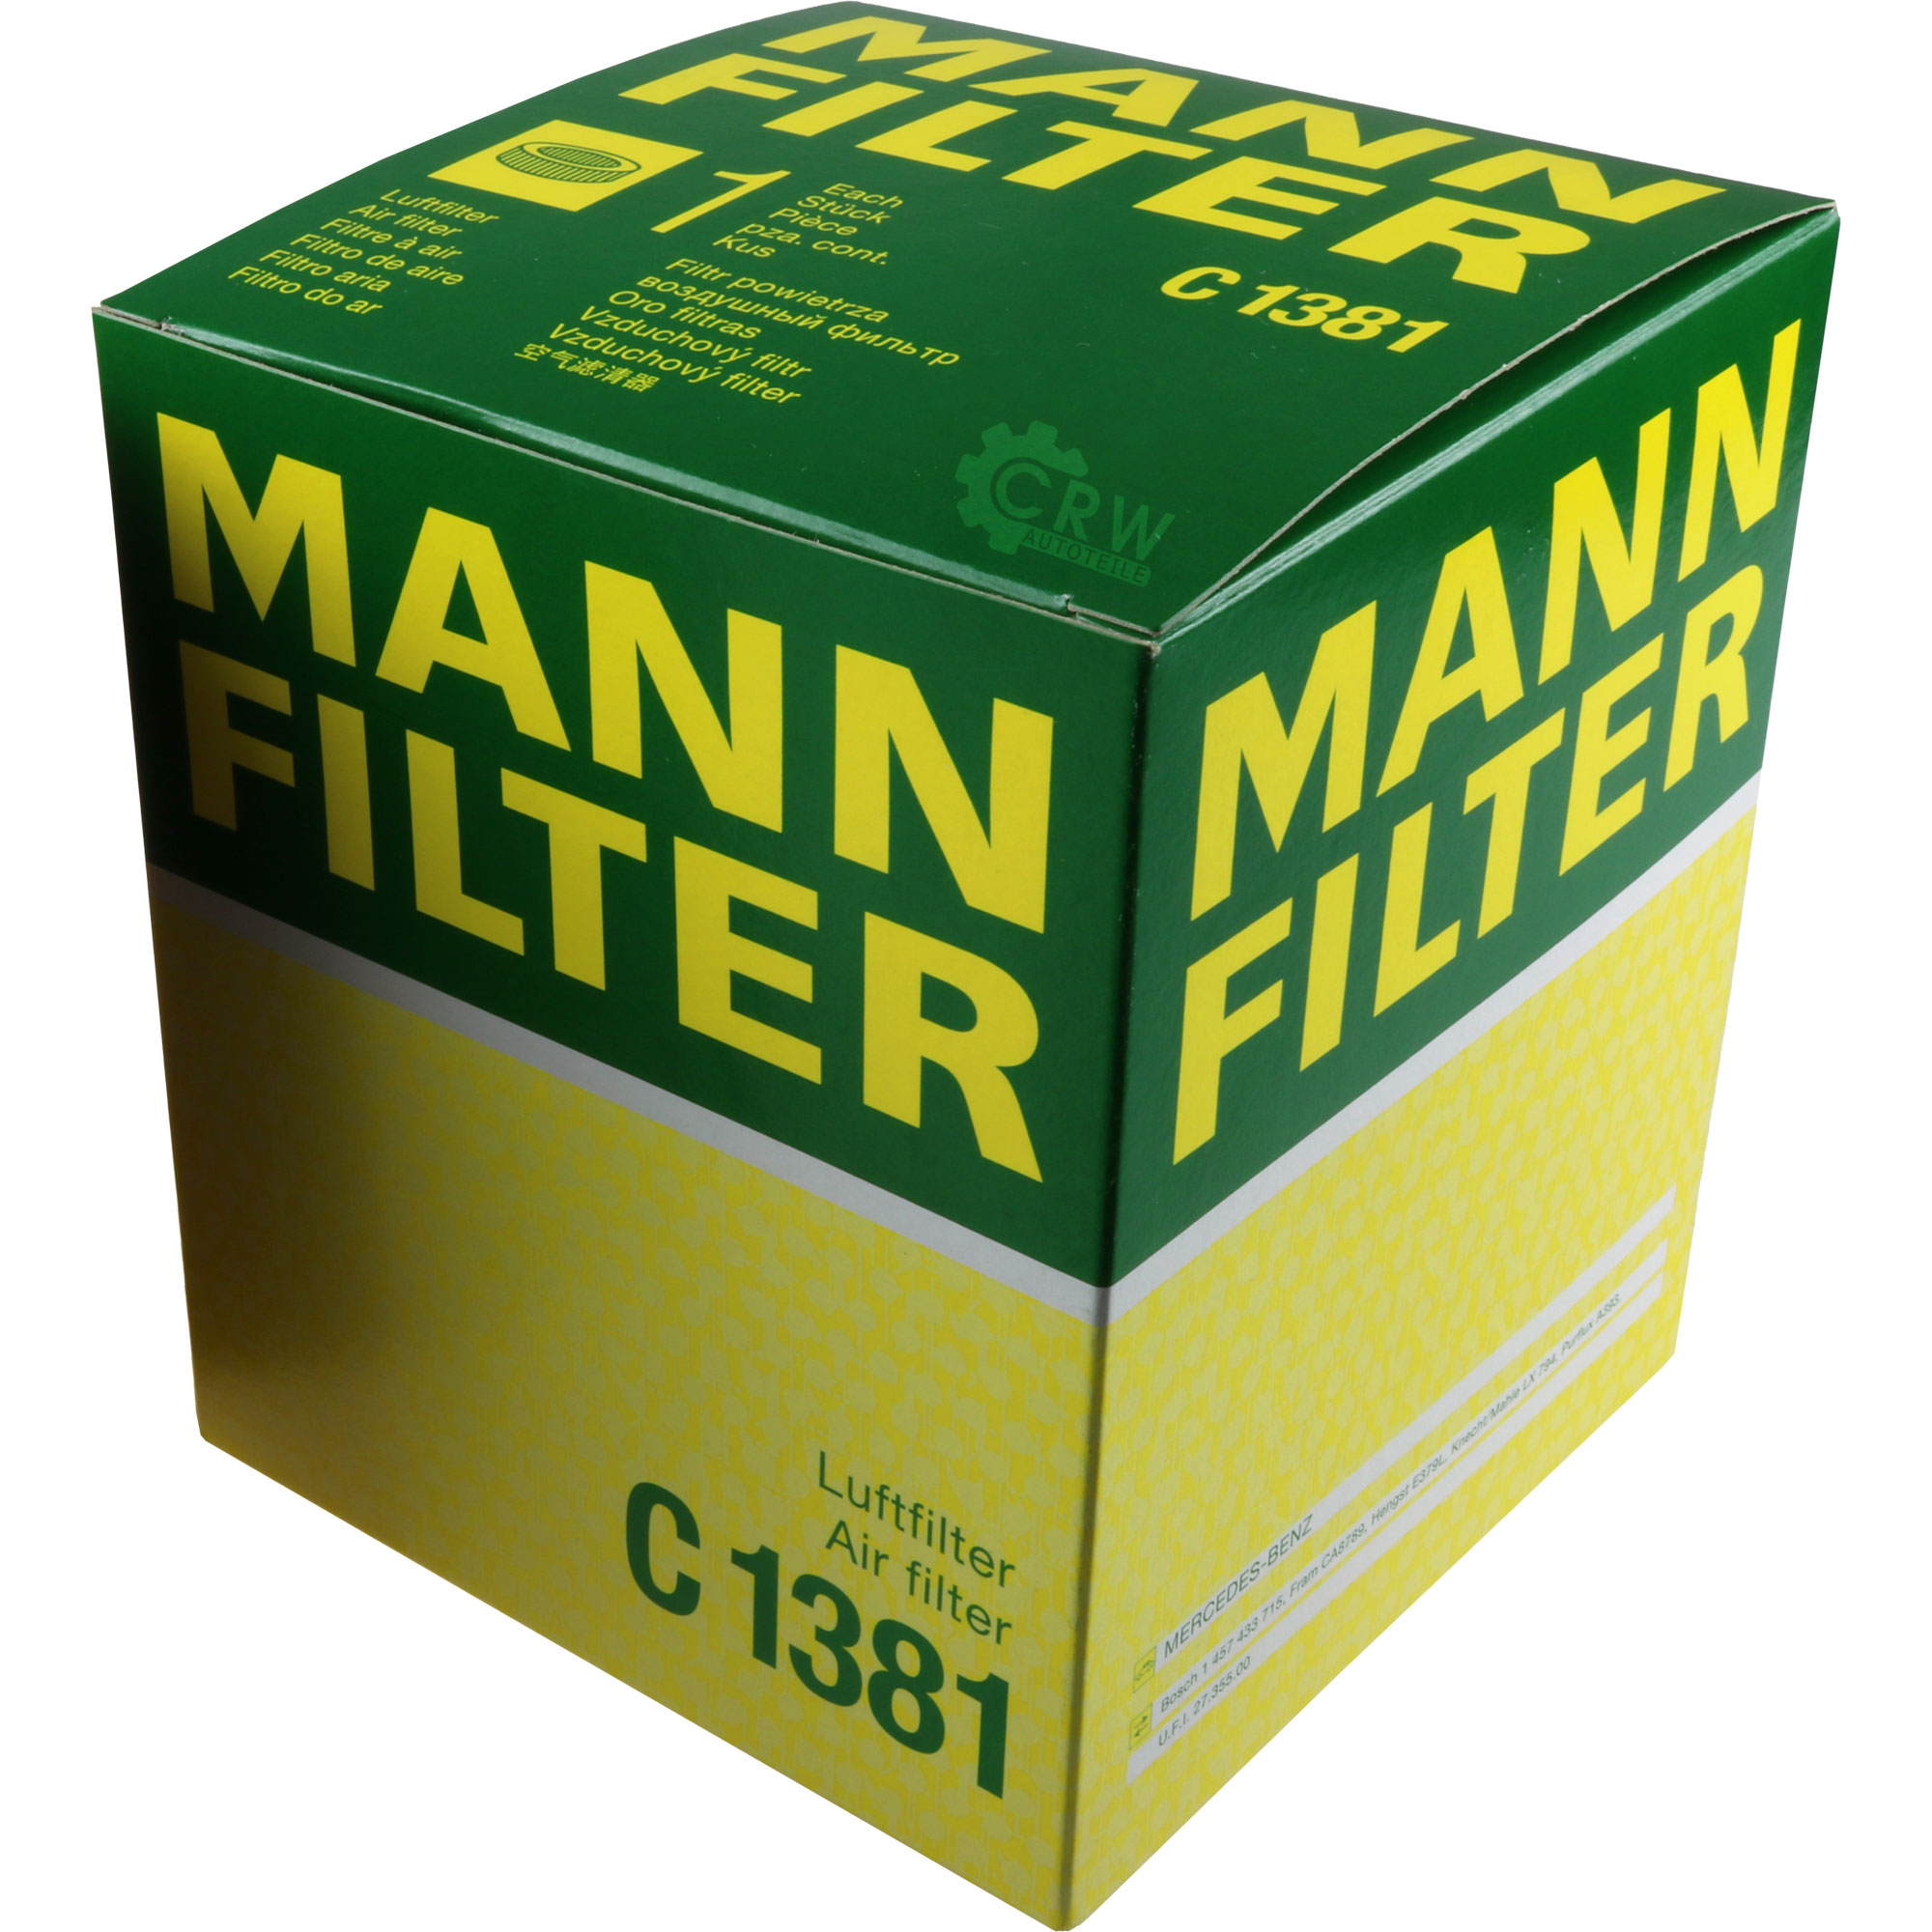 MANN-FILTER Luftfilter für Mercedes-Benz A-Klasse W168 Vaneo 414 1.9 1.6